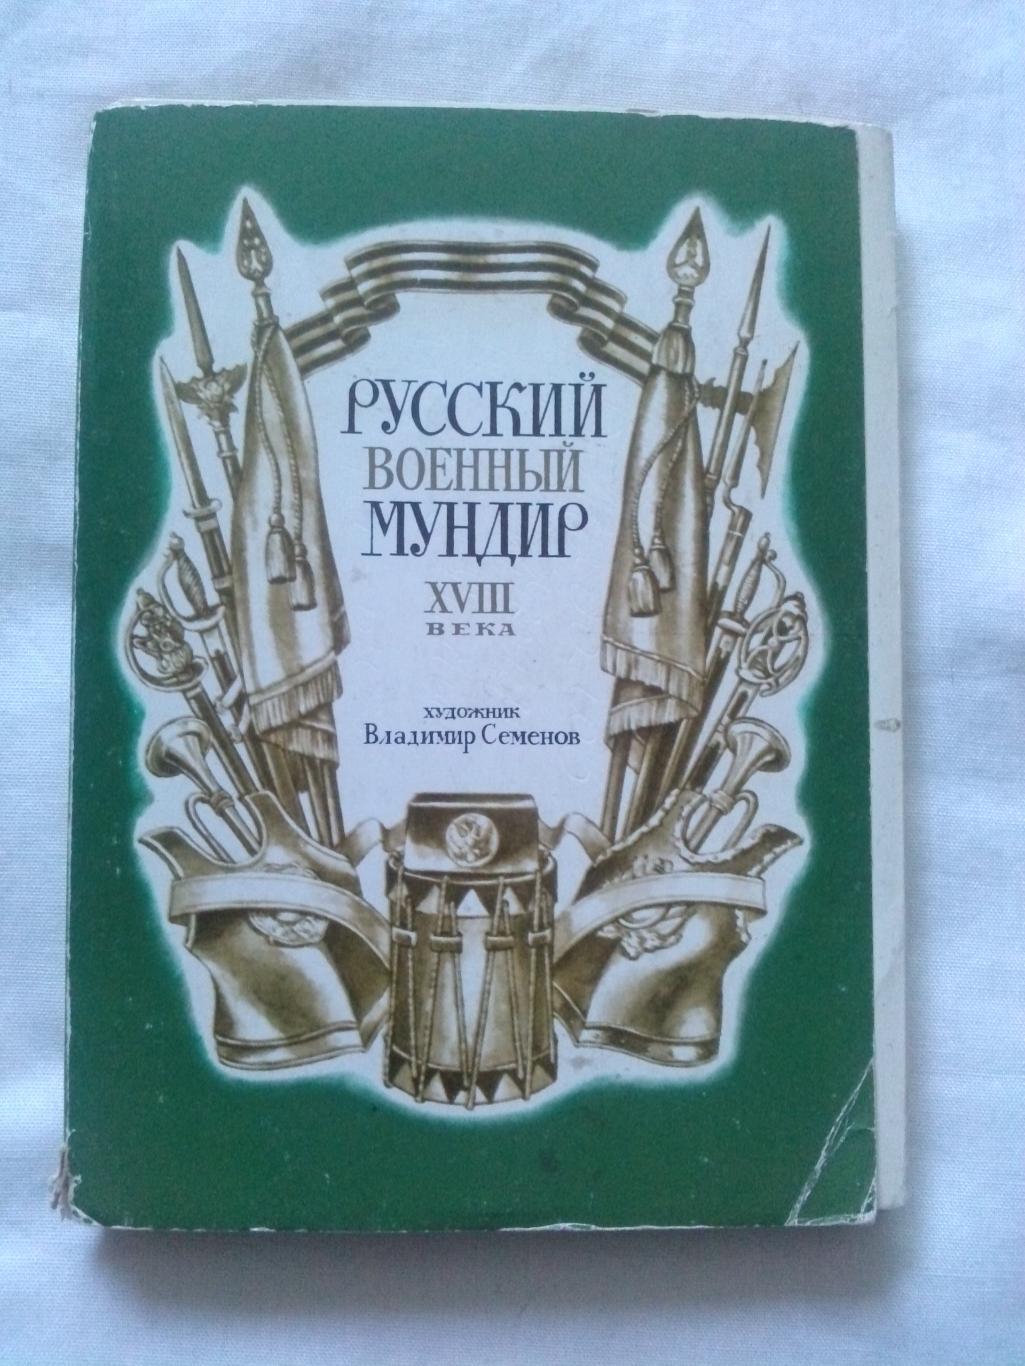 Русский военный мундир XVIII века (1985 г.) полный набор - 32 открытки (чистые)